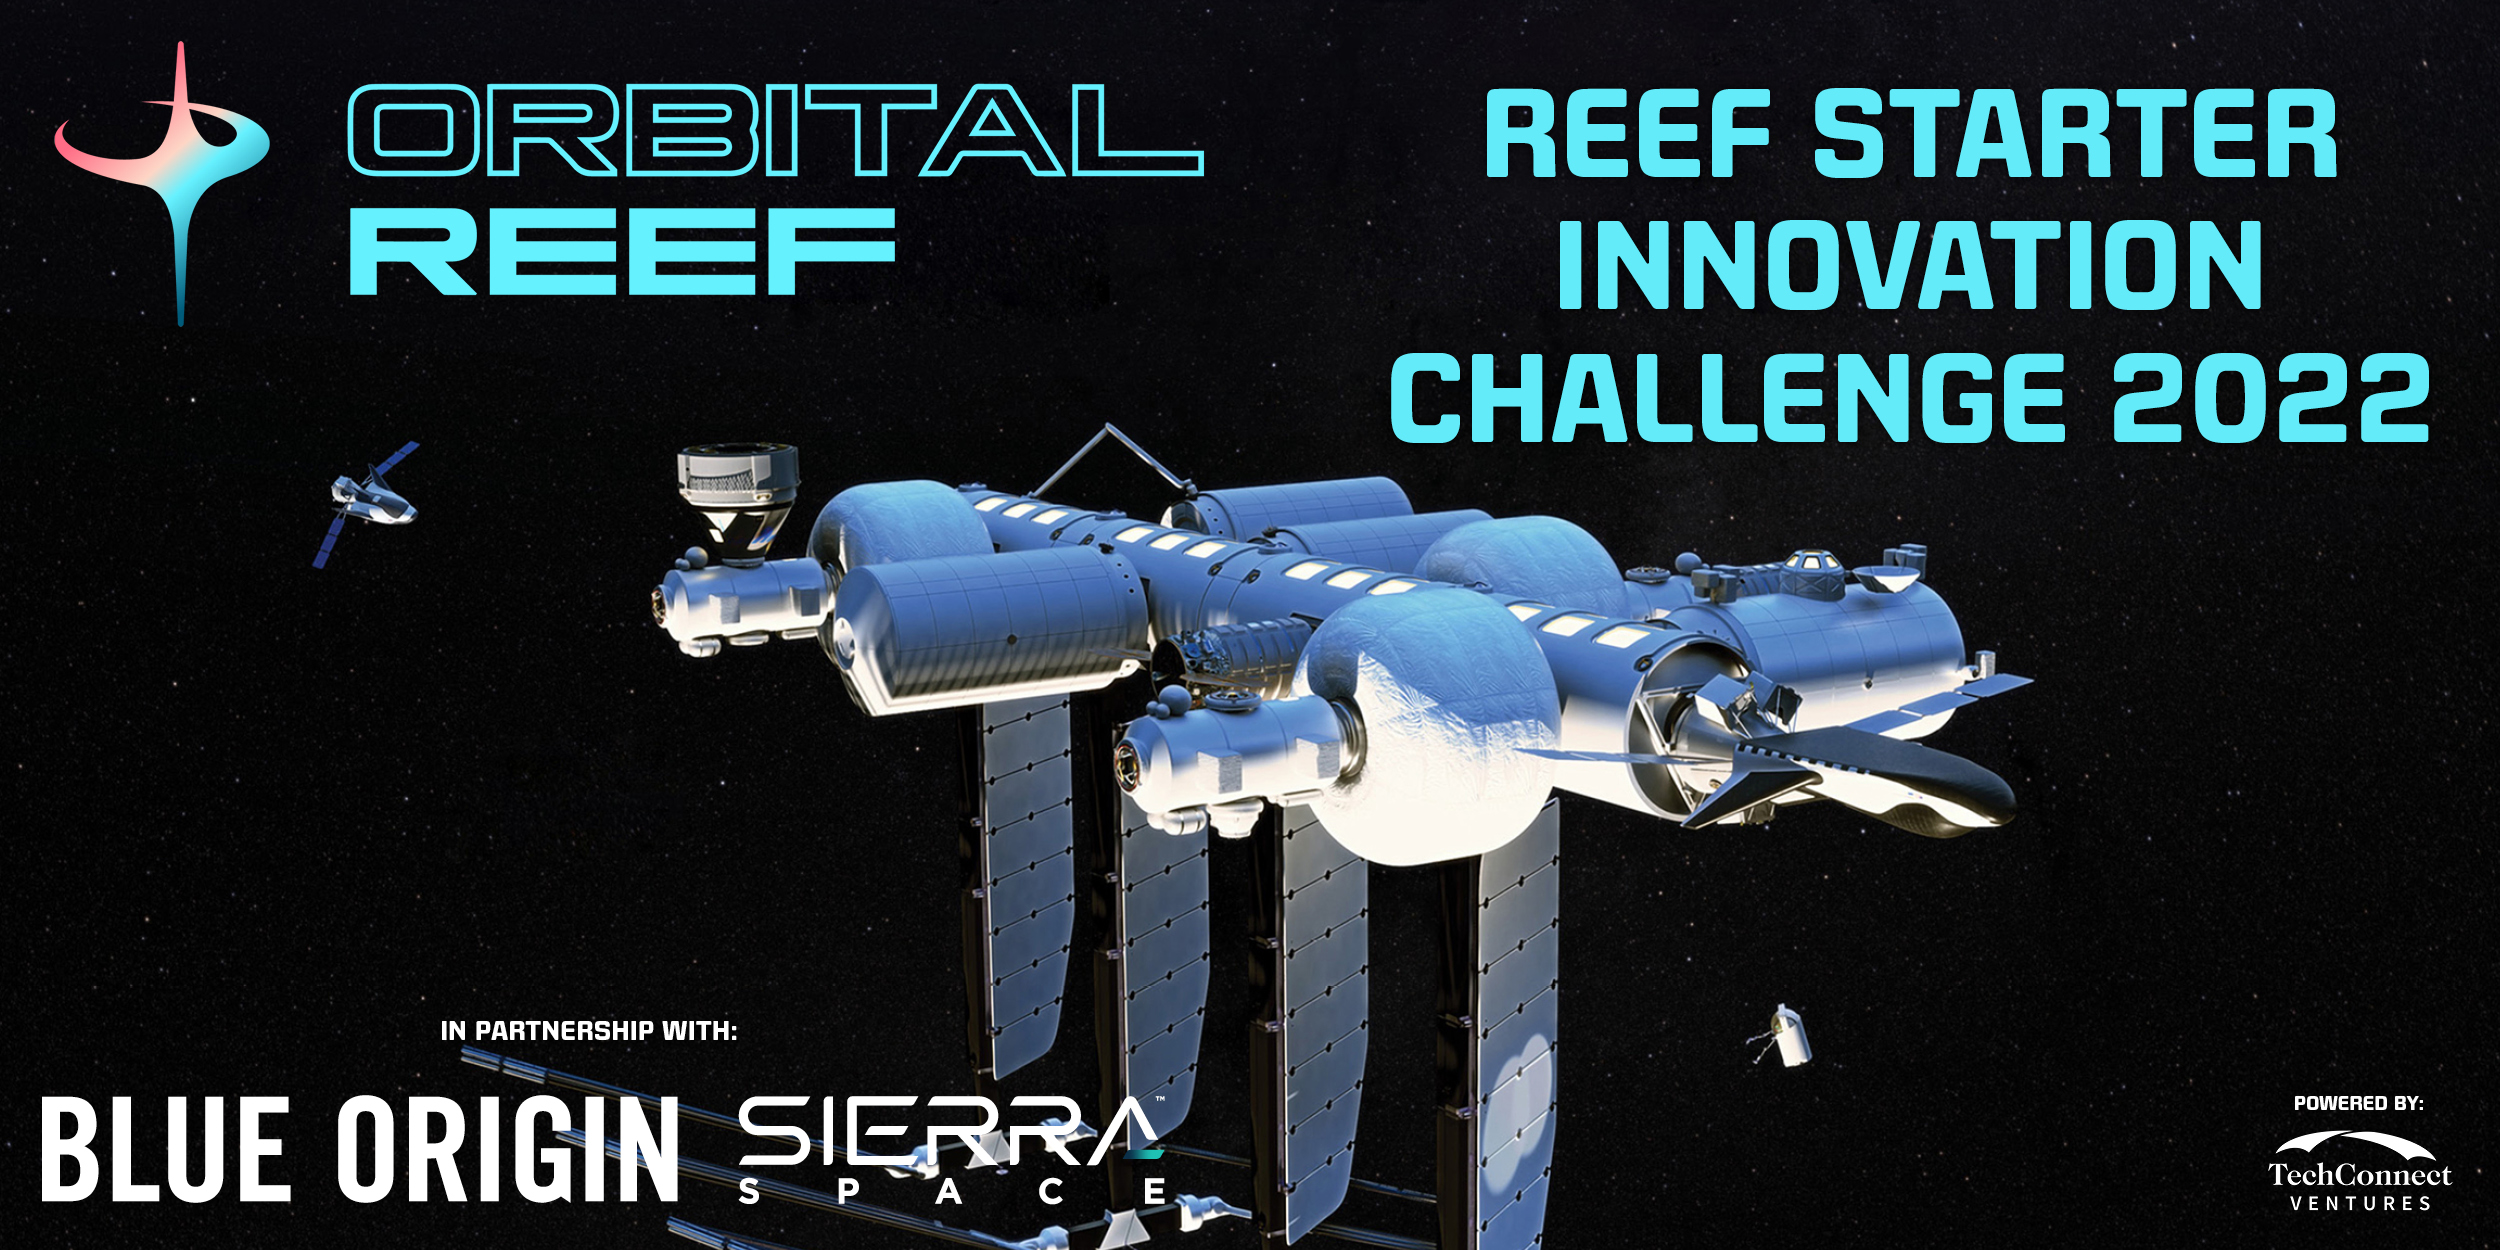 Seeking Startups & Entrepreneurs for the Reef Starter Innovation Challenge